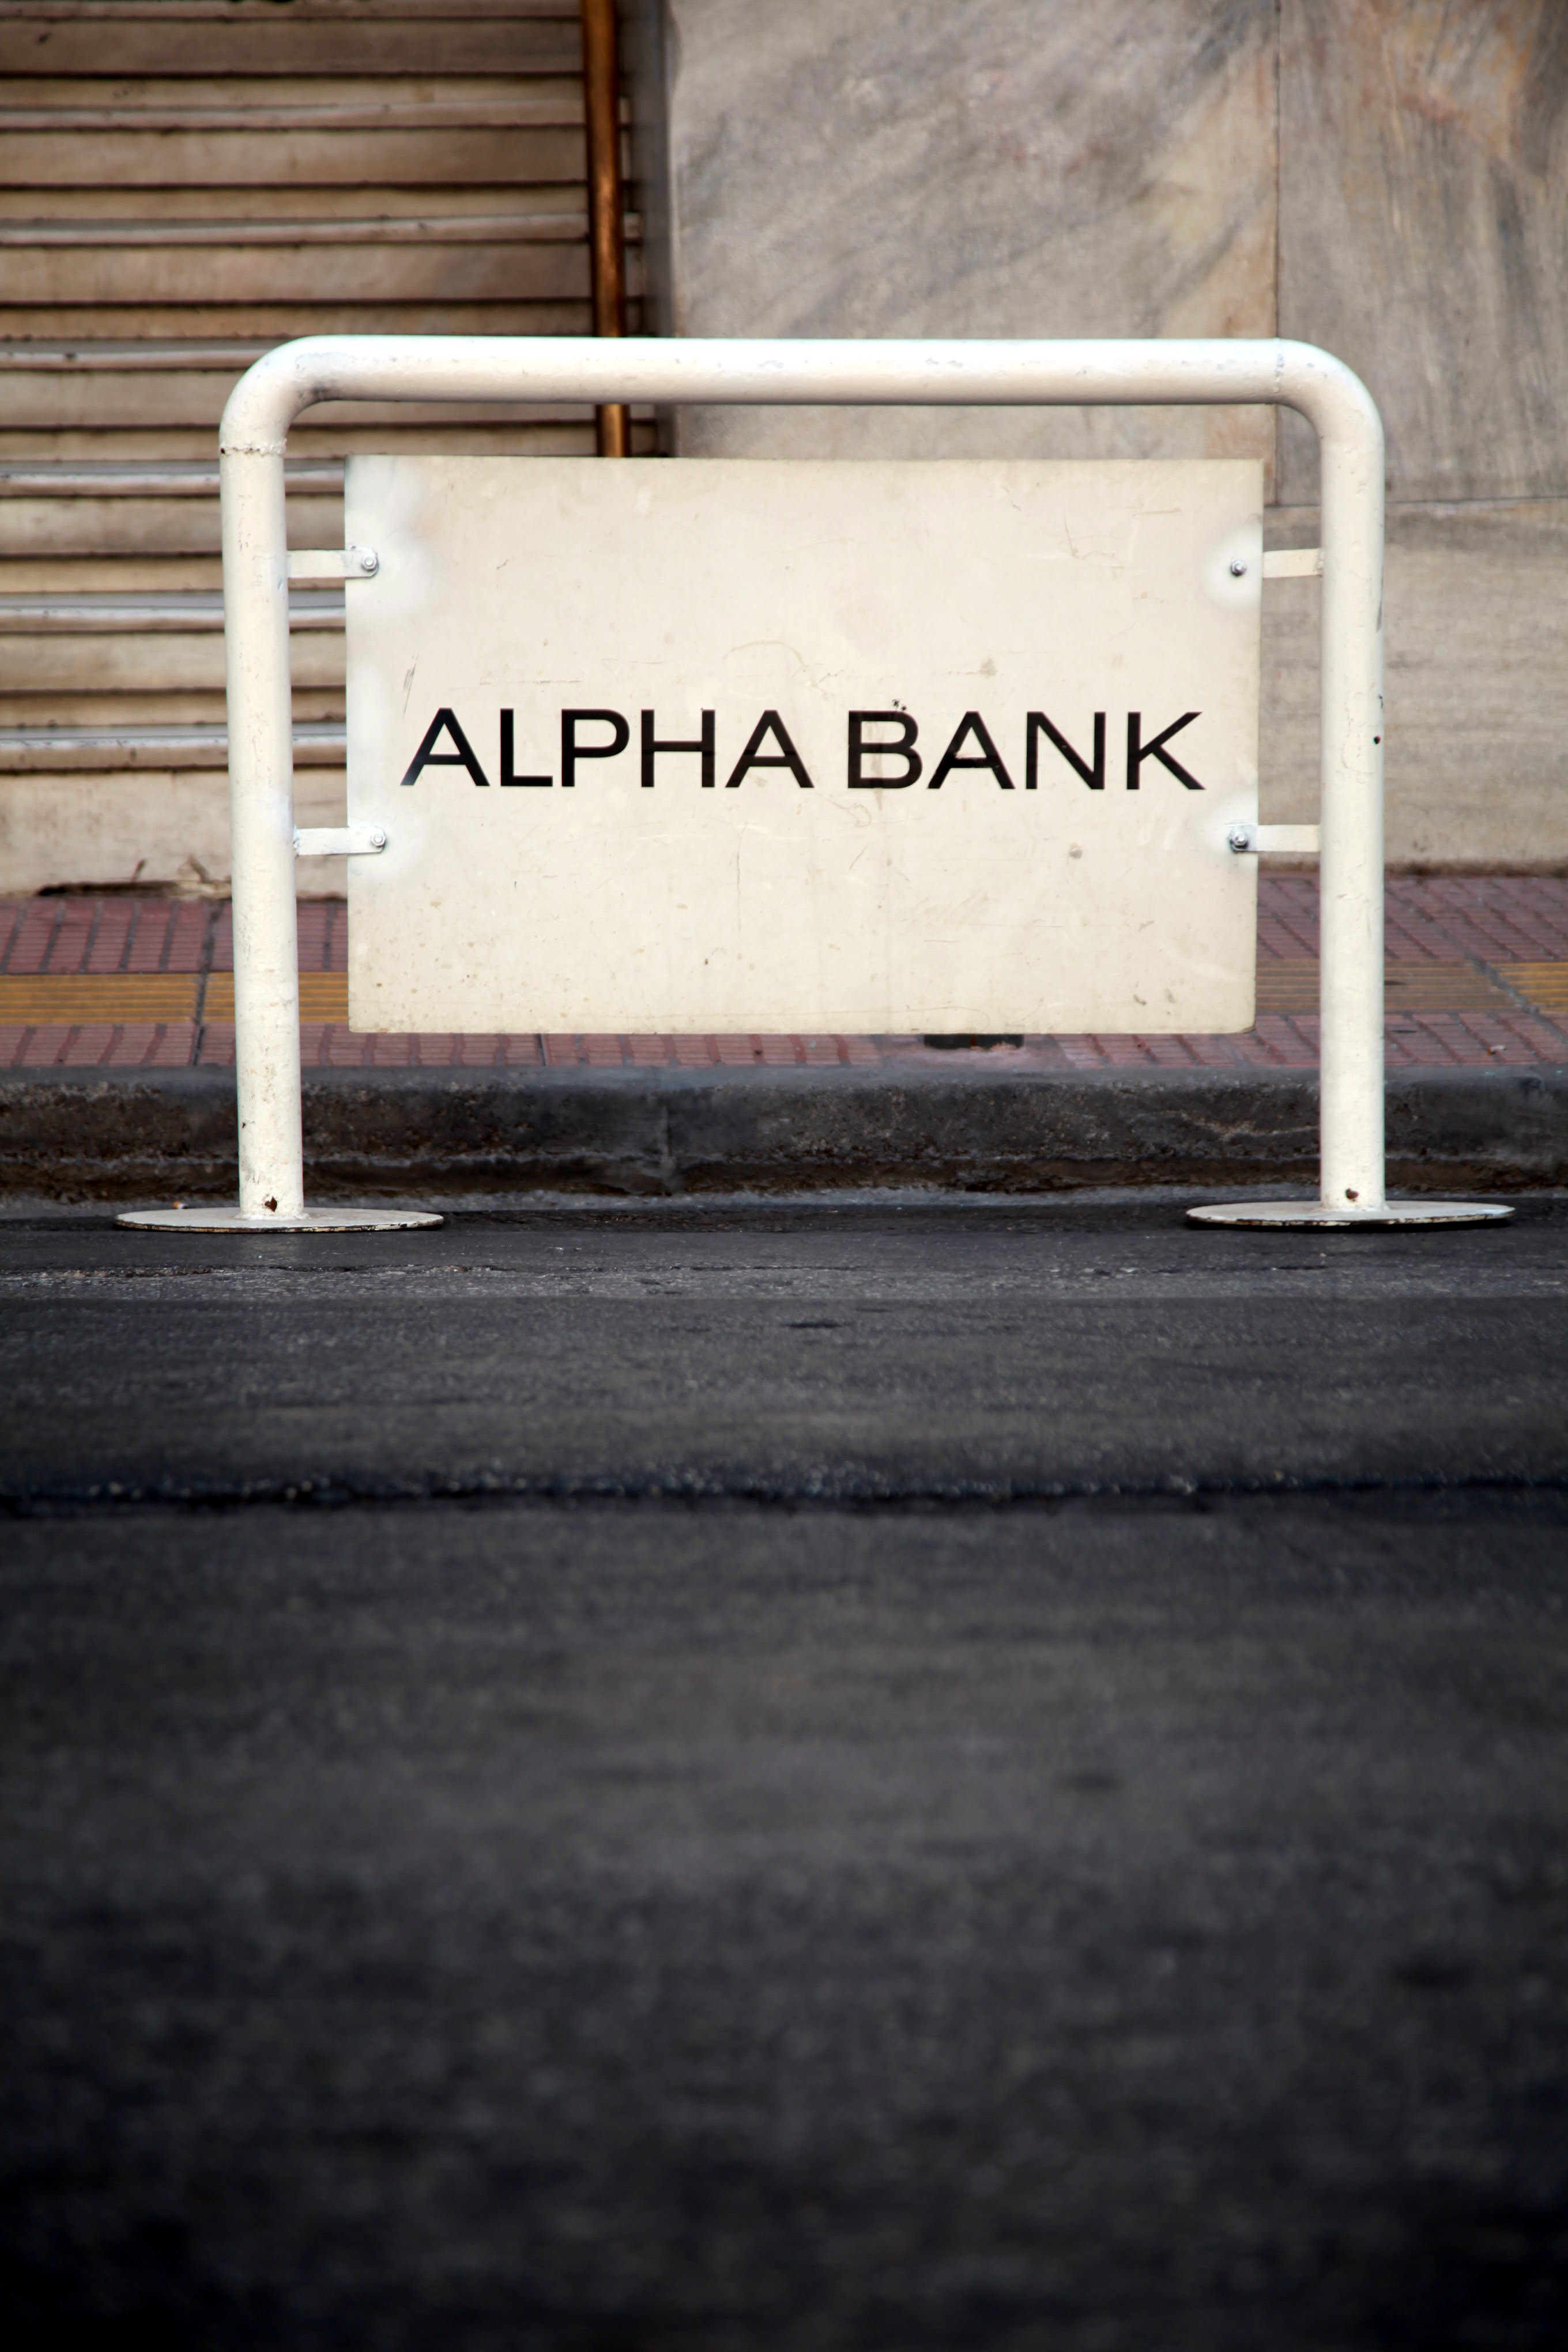 Alpha Bank: Η έξοδος από το Μνημόνιο δεν συνεπάγεται έξοδο από την κρίση!